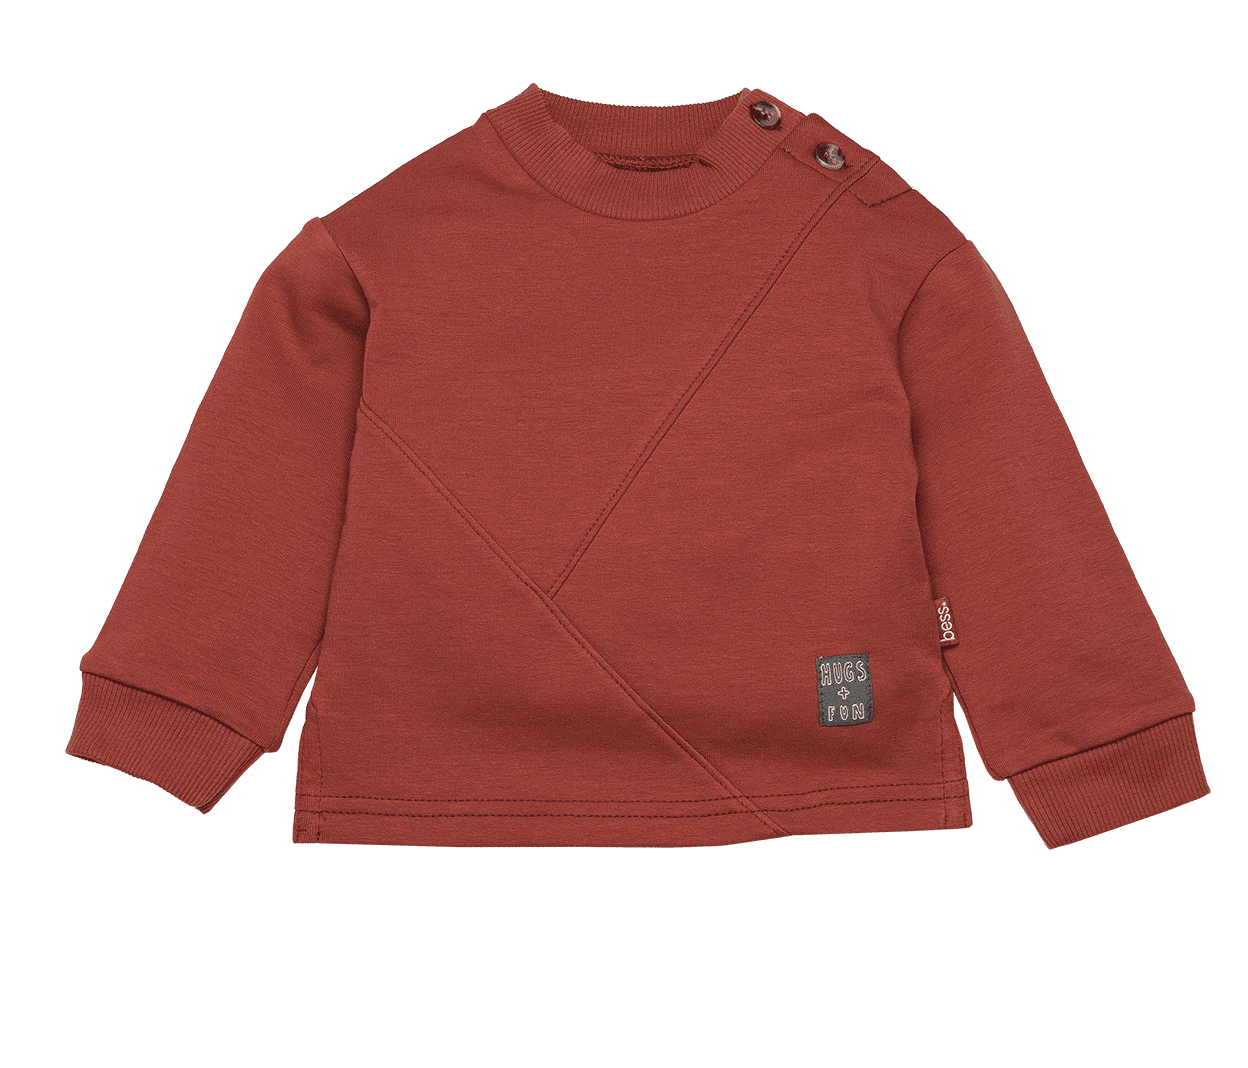 Sweater Diagonal – Hot Sauce